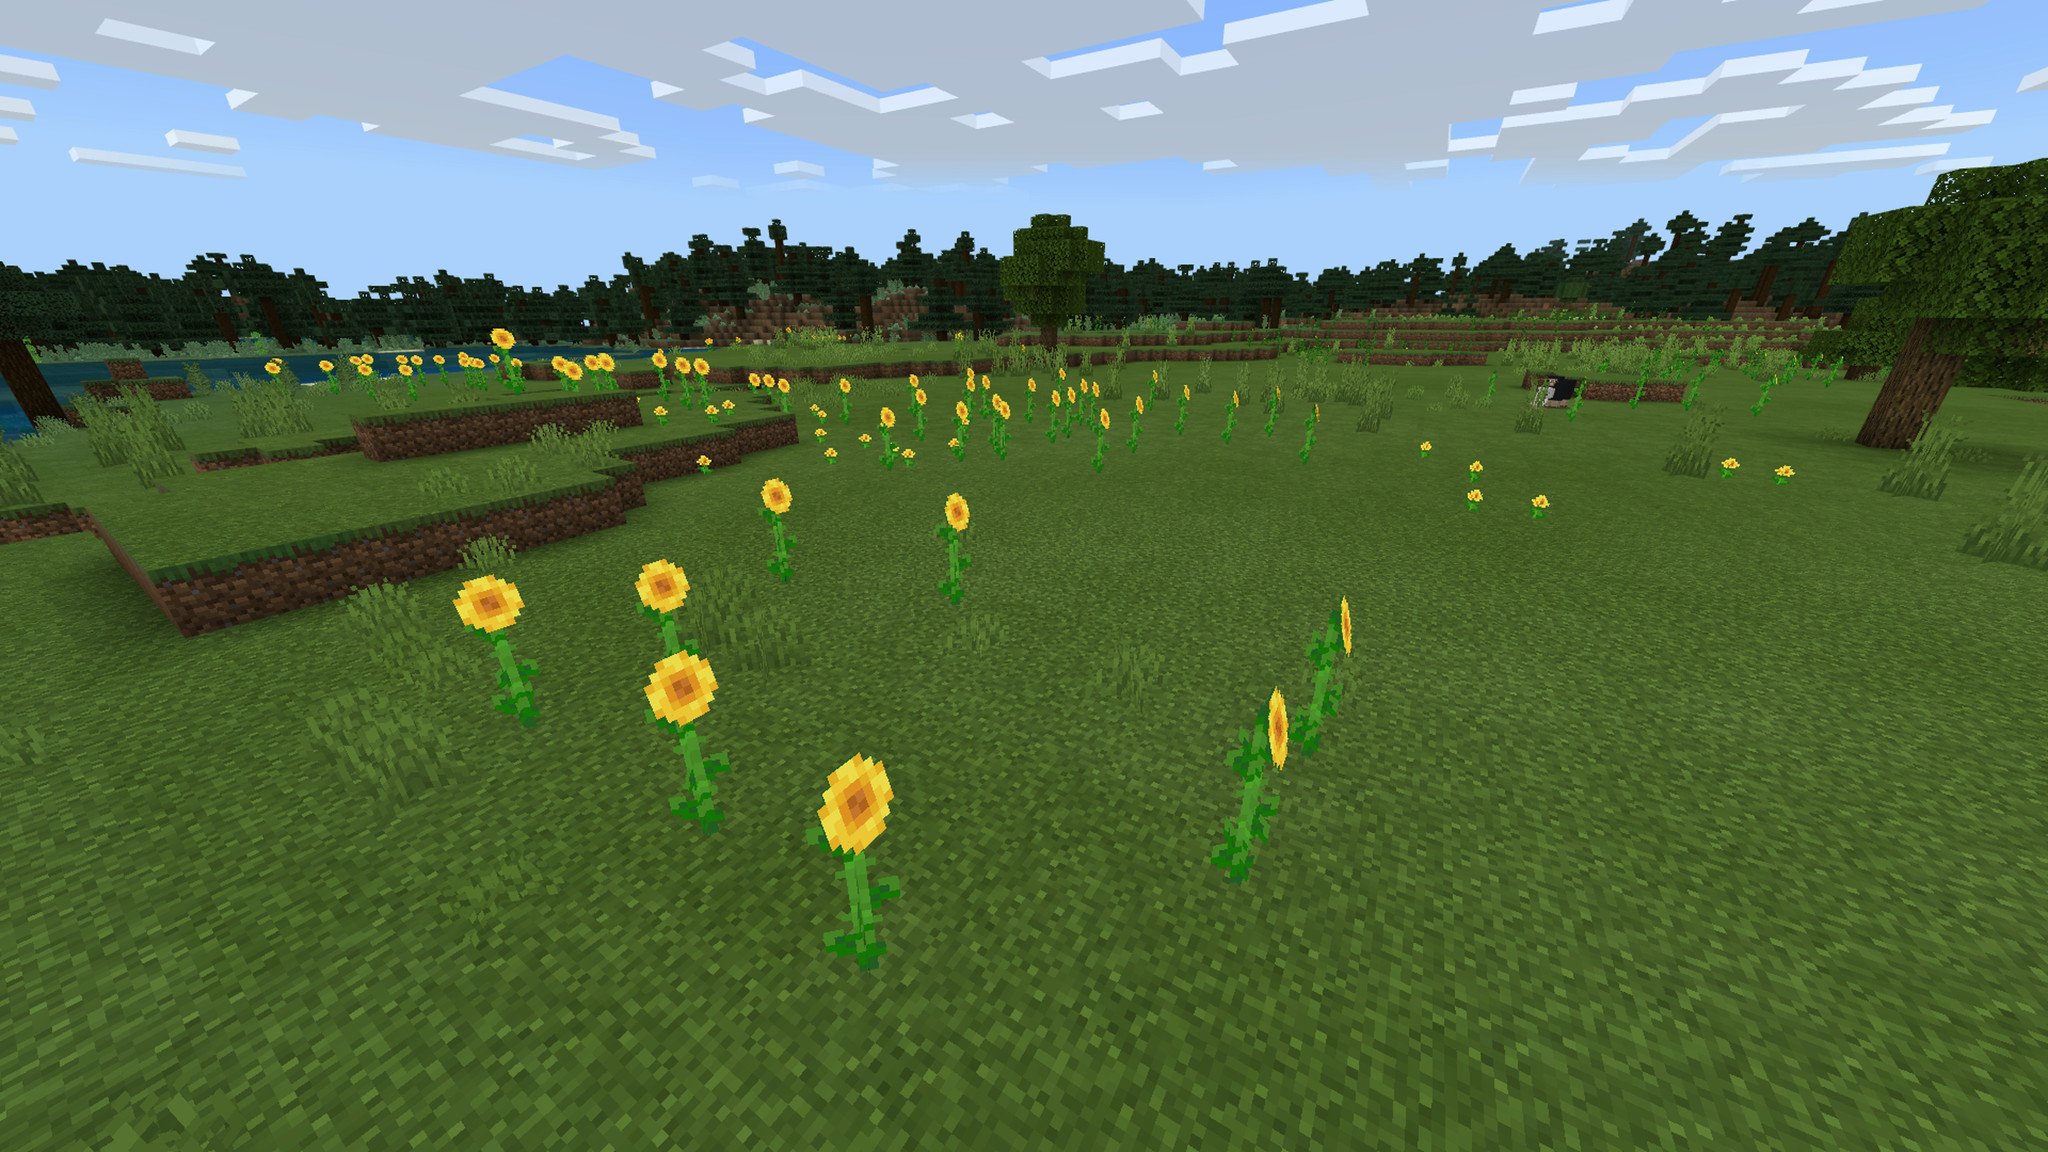 Sunflowers face the sun